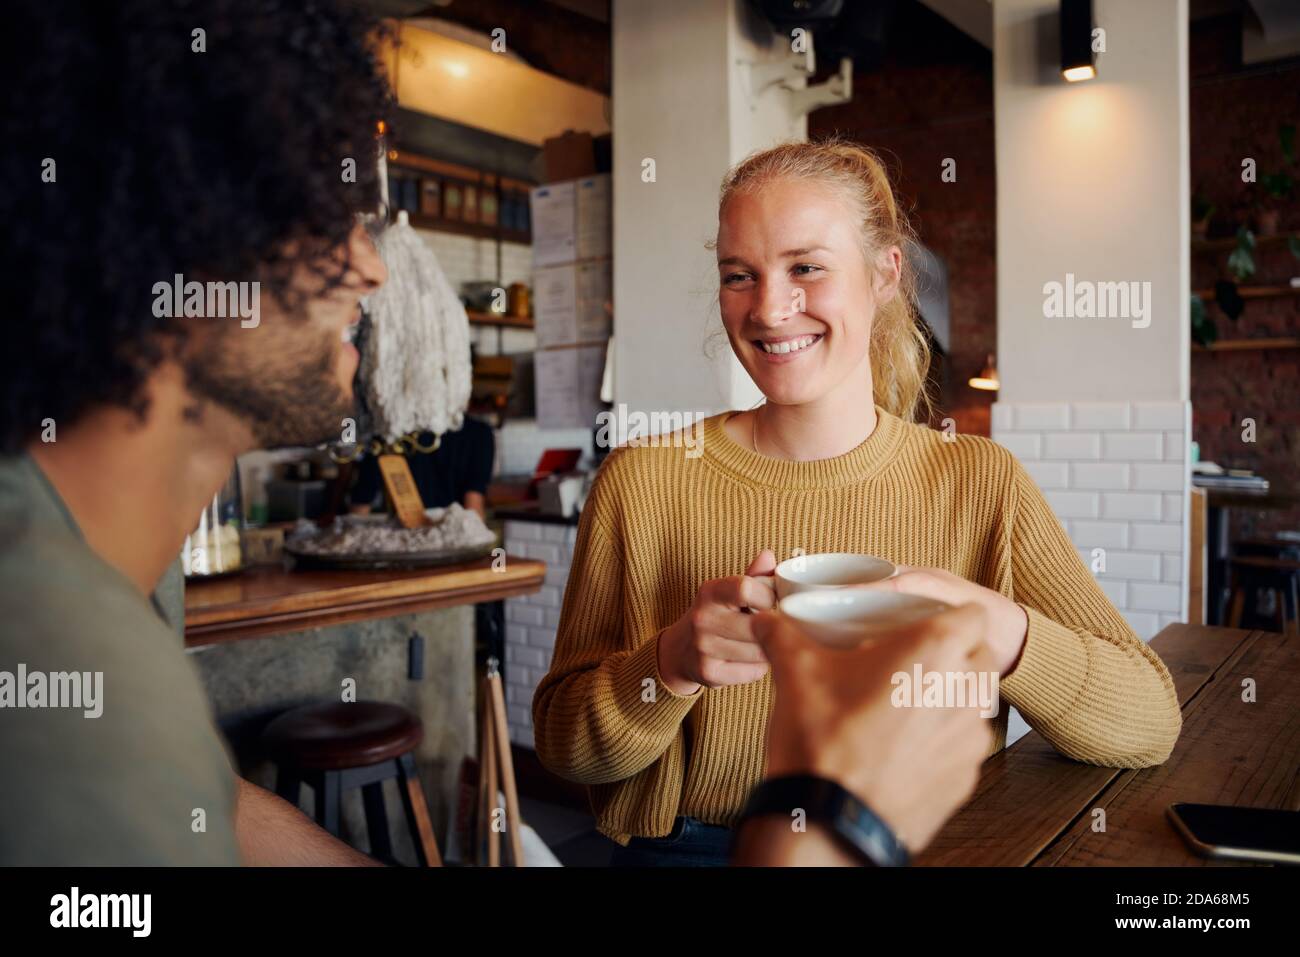 Portrait der schönen jungen Frau hält Kaffeebecher und reden Mann mit lockigen Haaren in einem modernen Café Stockfoto